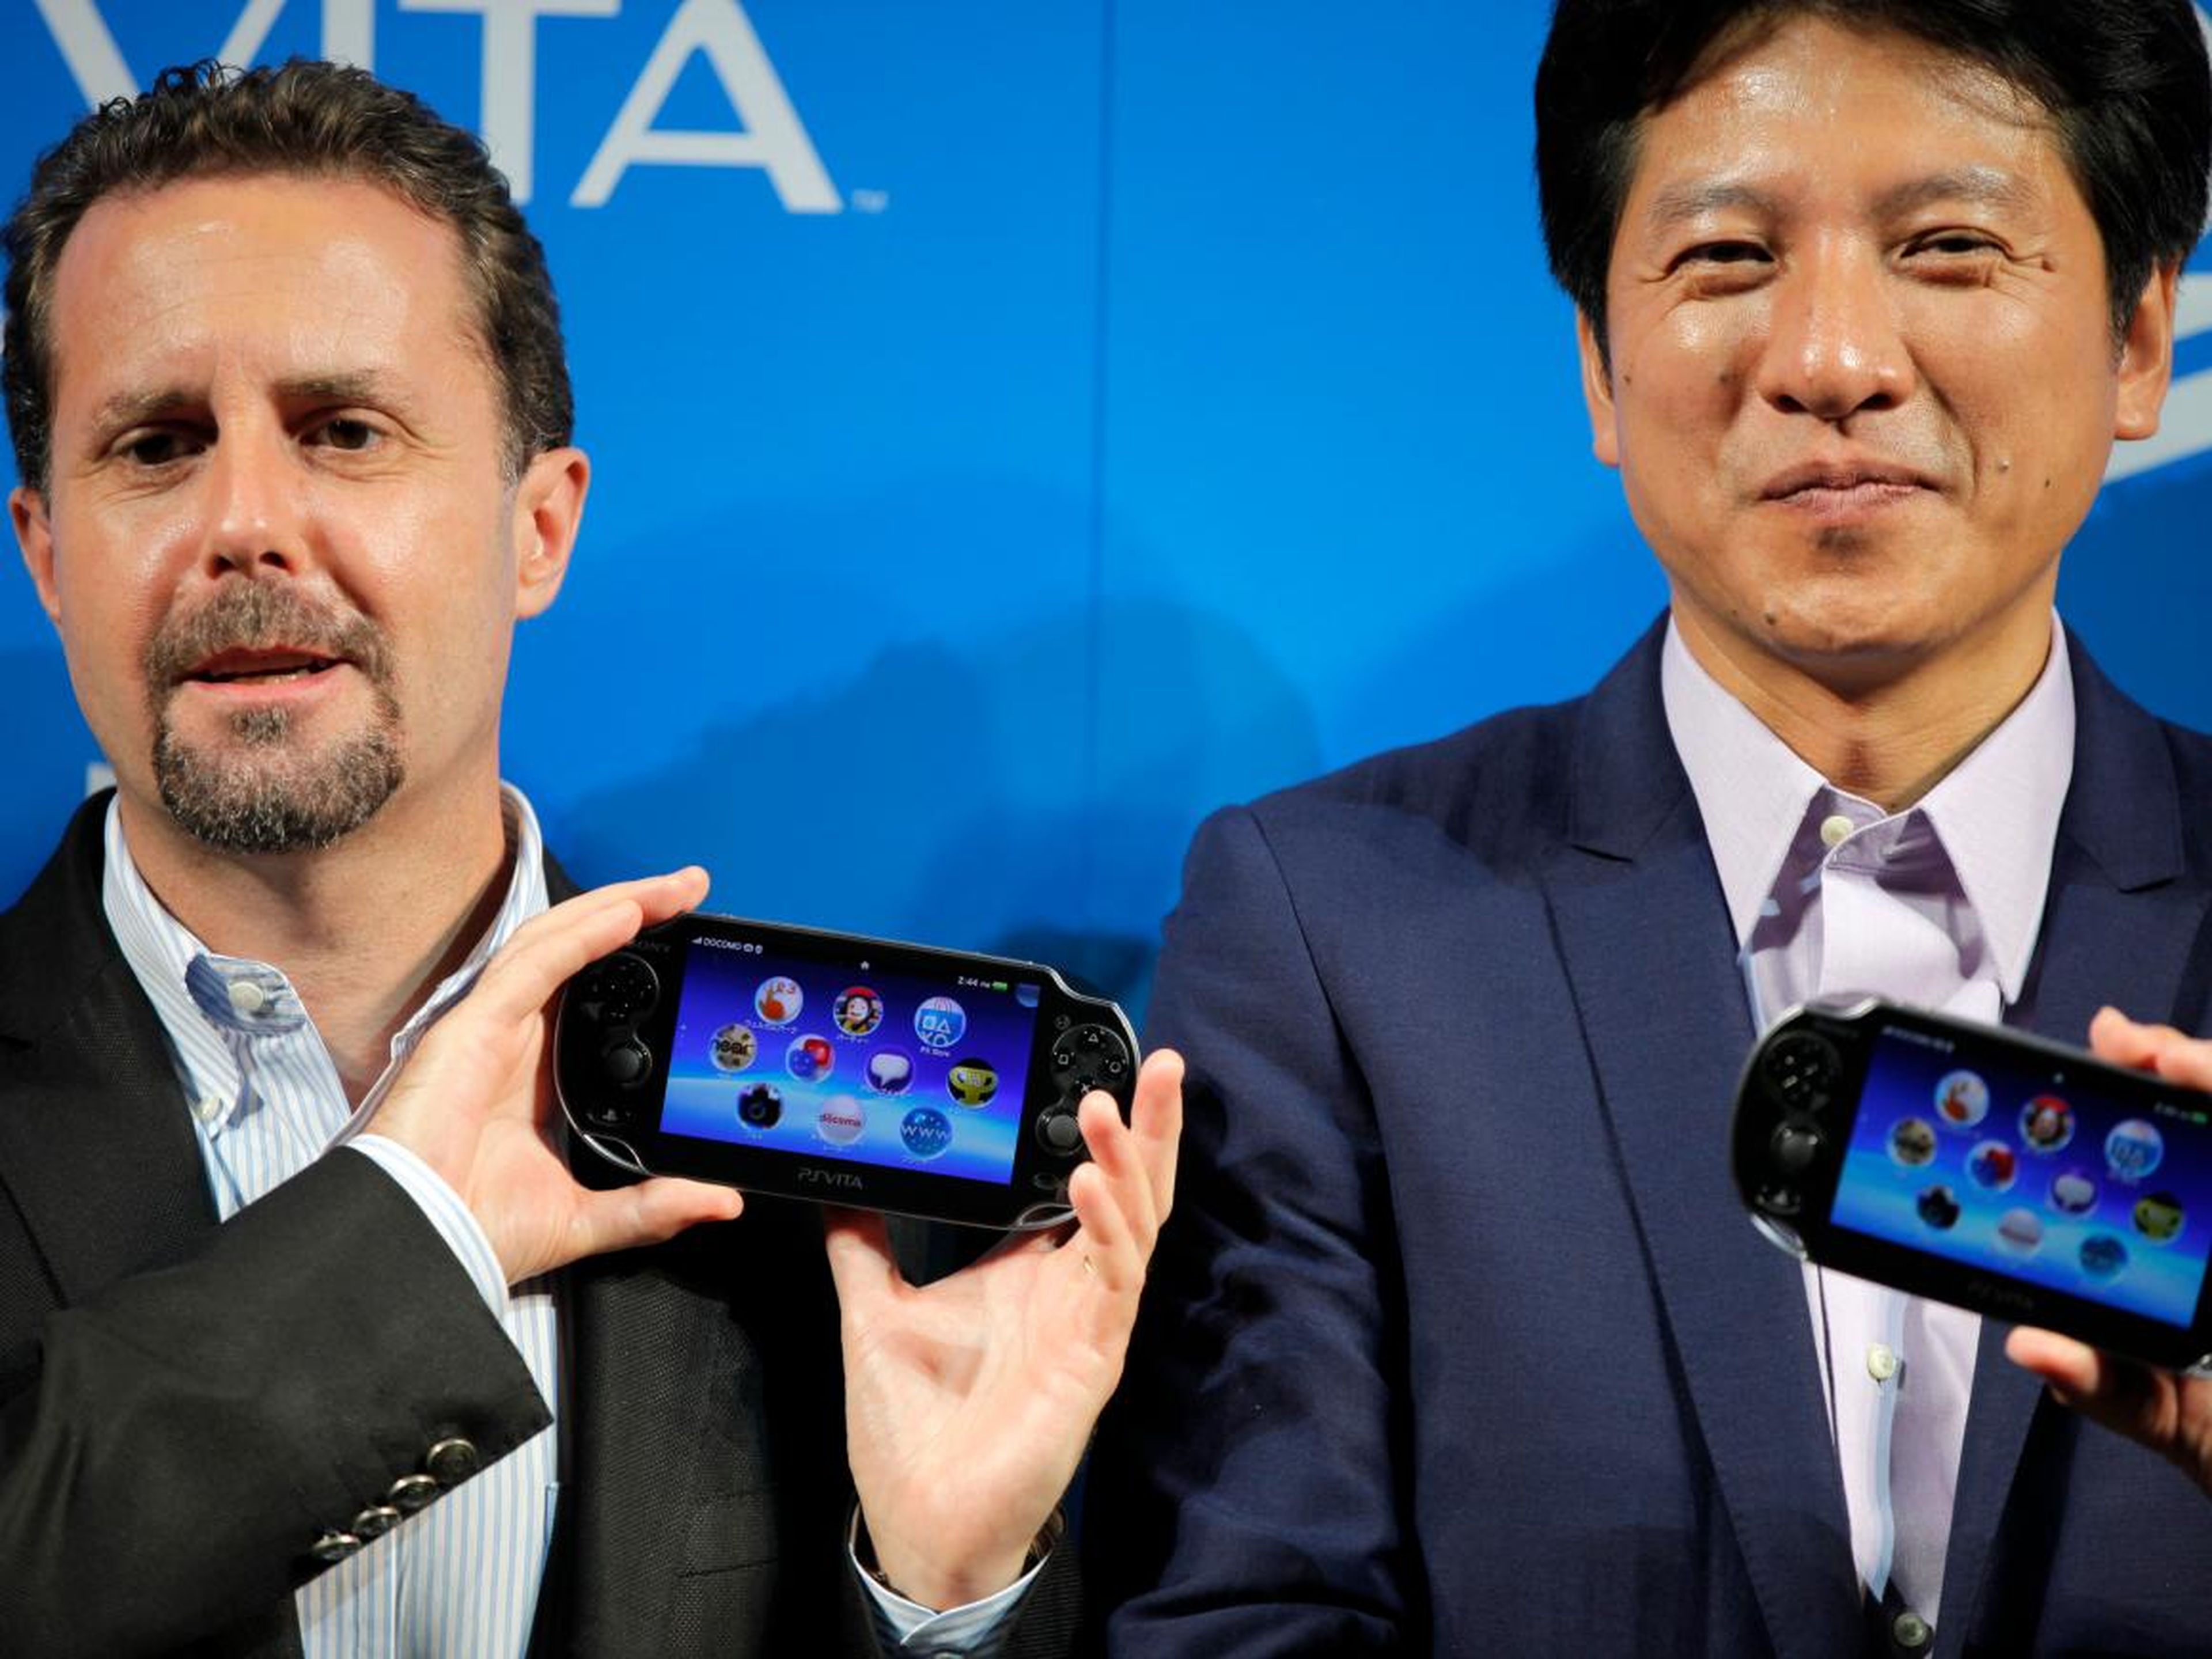 Sony baja el precio de la PlayStation Portable (PSP)